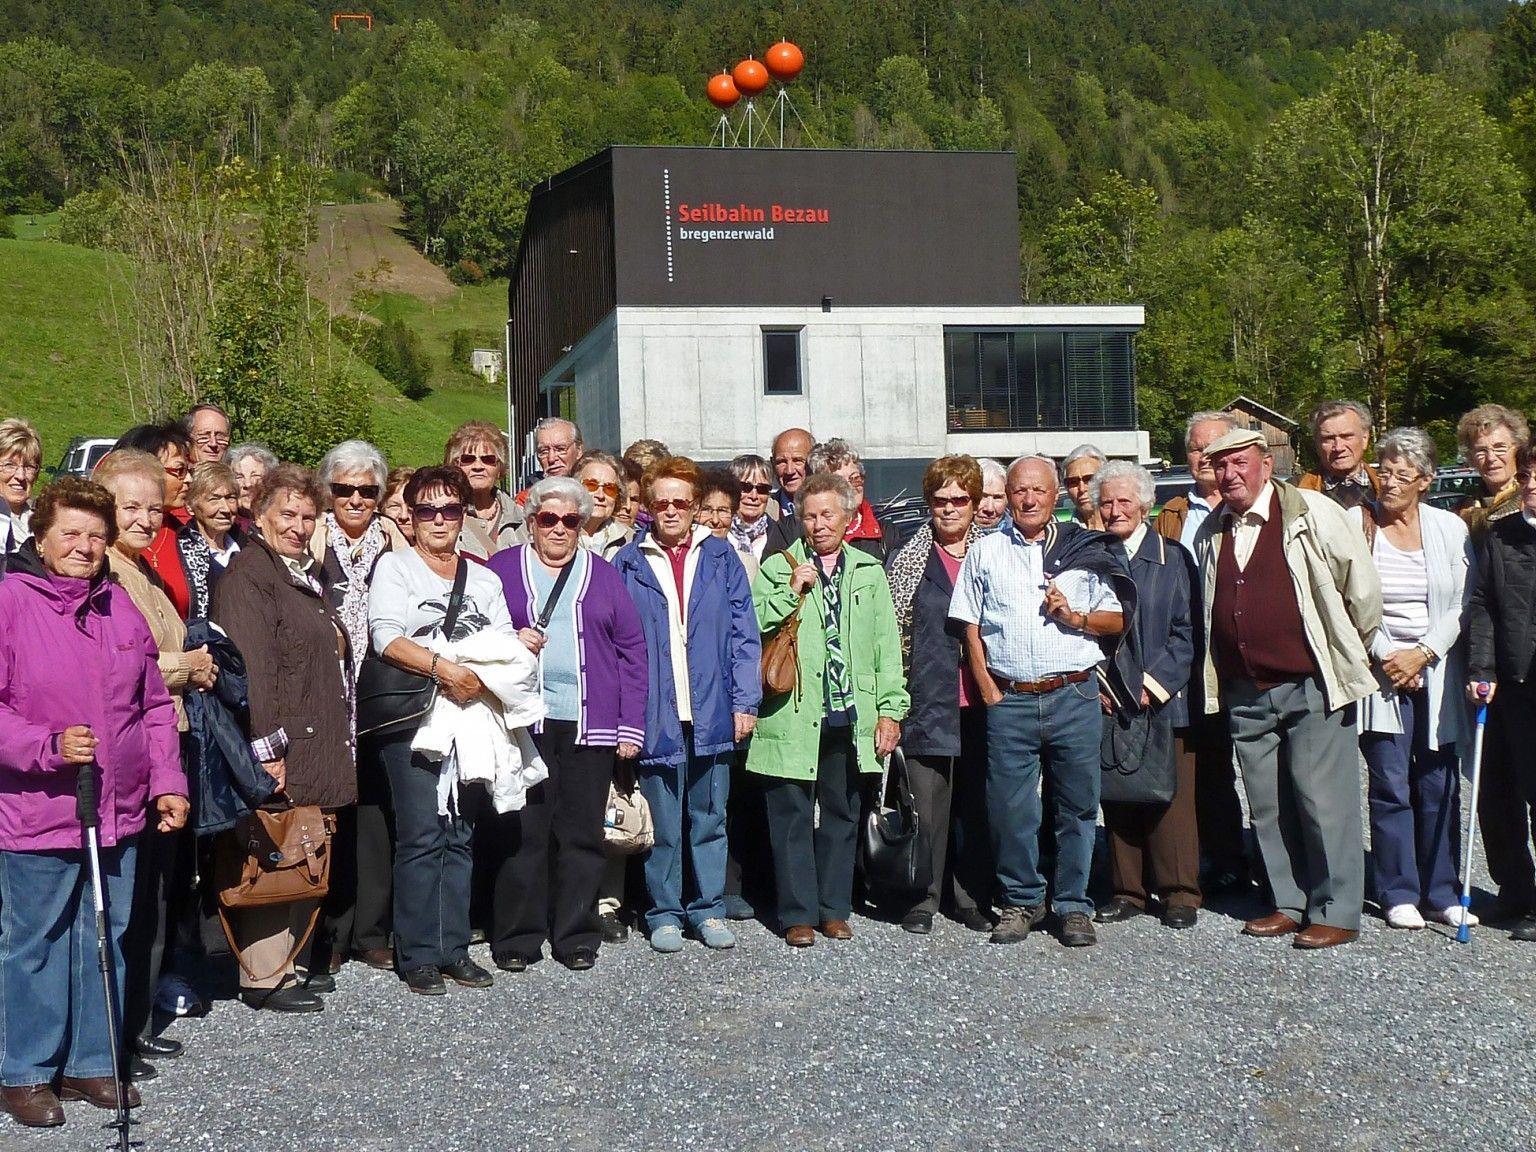 Fußacher Senioren bei der Bergbahn Bezau